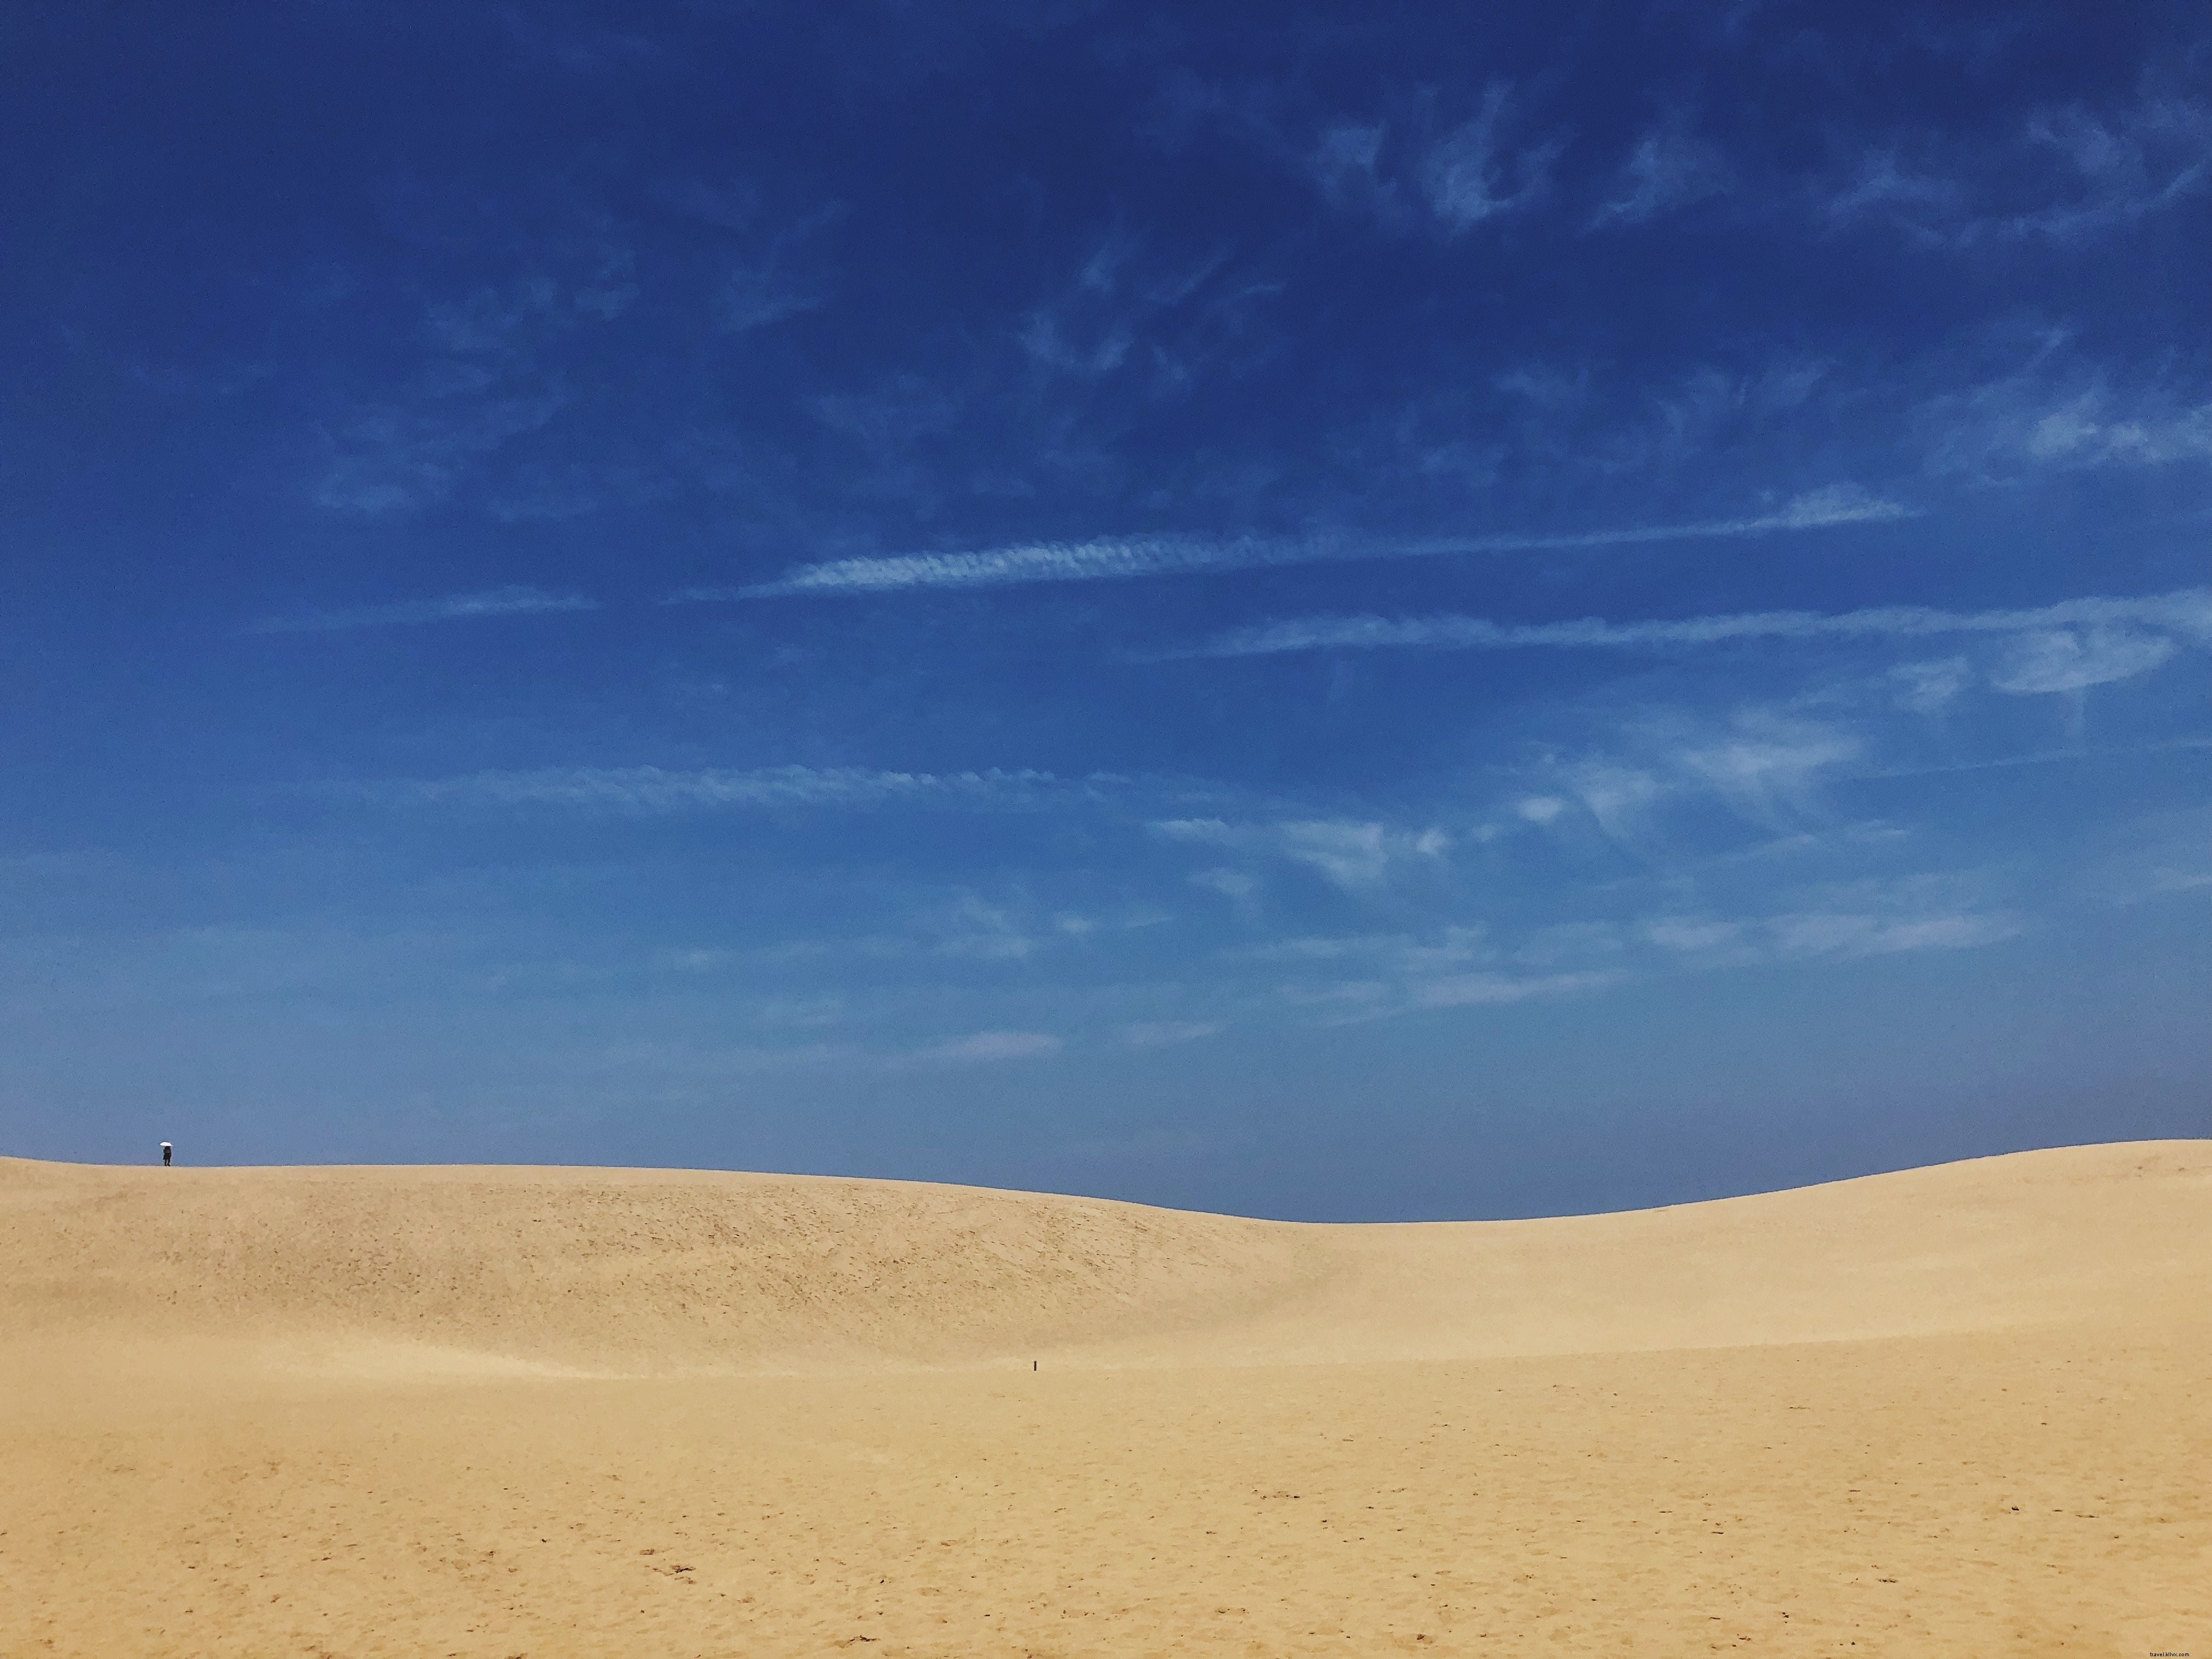 Le ciel bleu rencontre la photo des dunes de sable